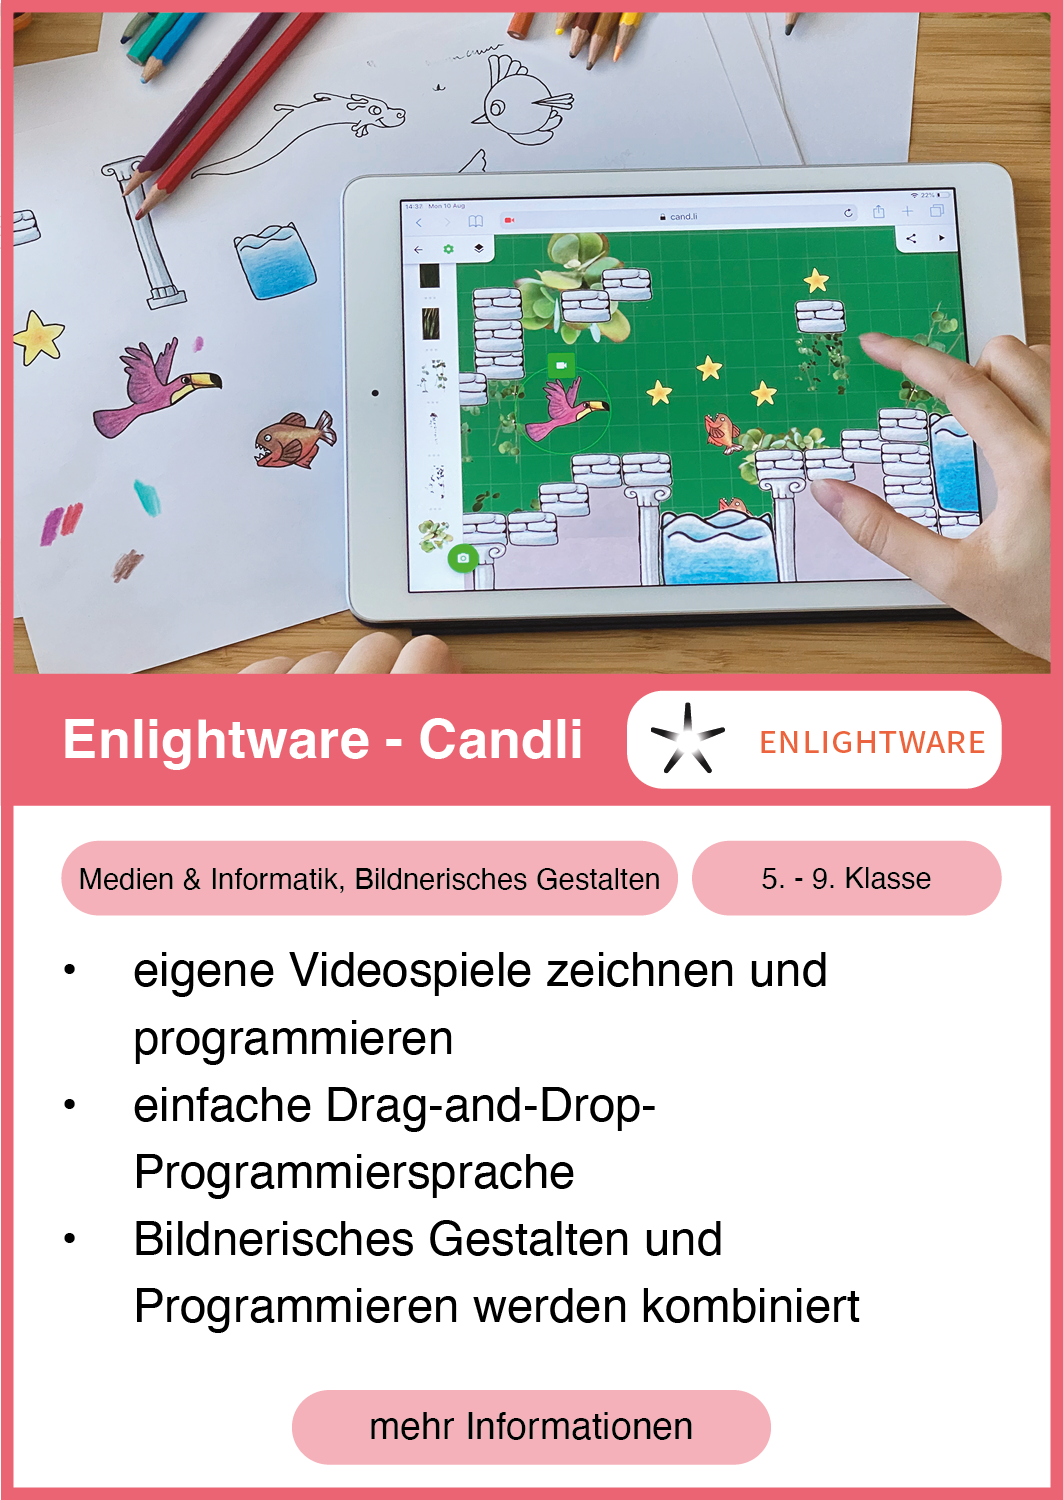 Enlightware - Candli